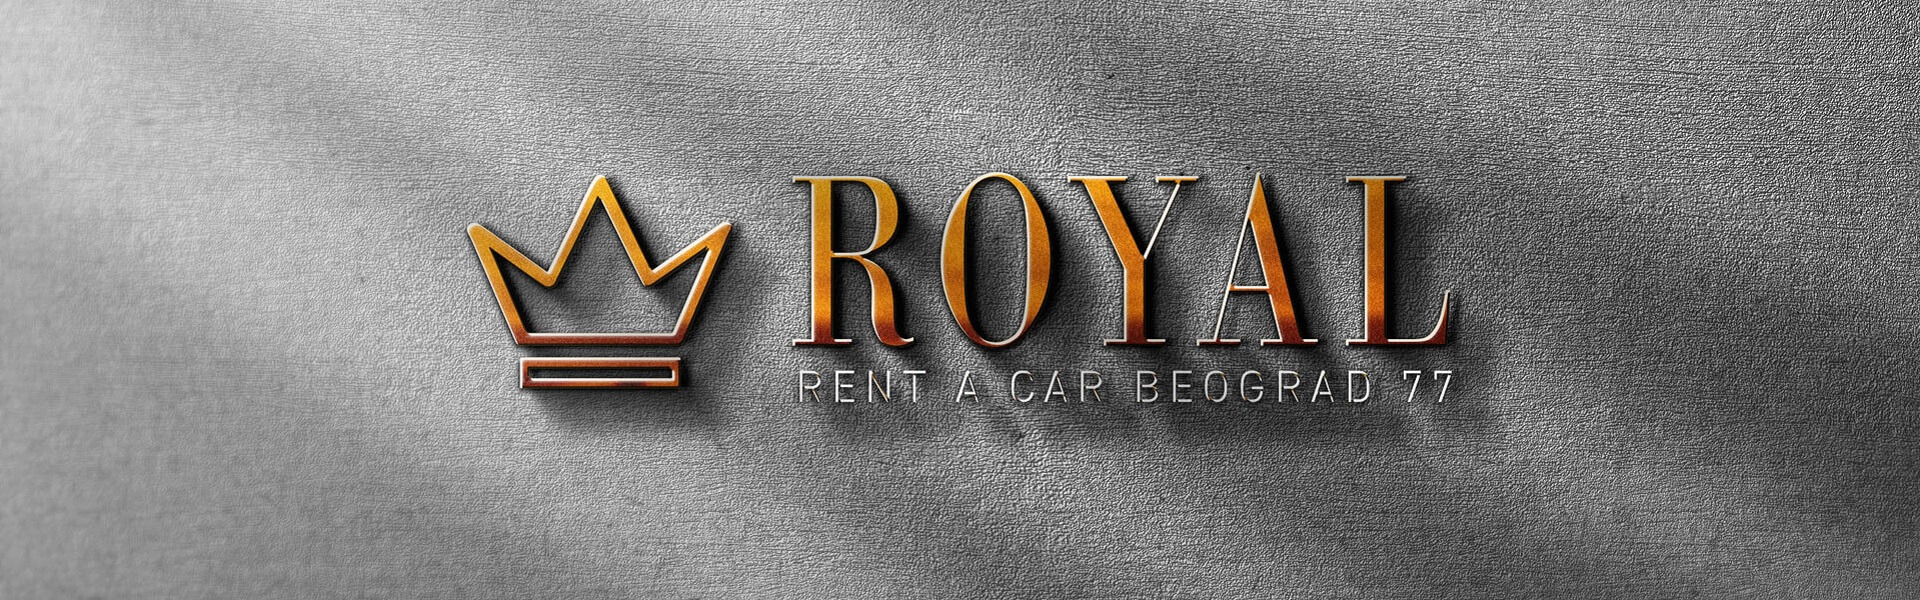 Rent a car Belgrade | Car rental Beograd Royal